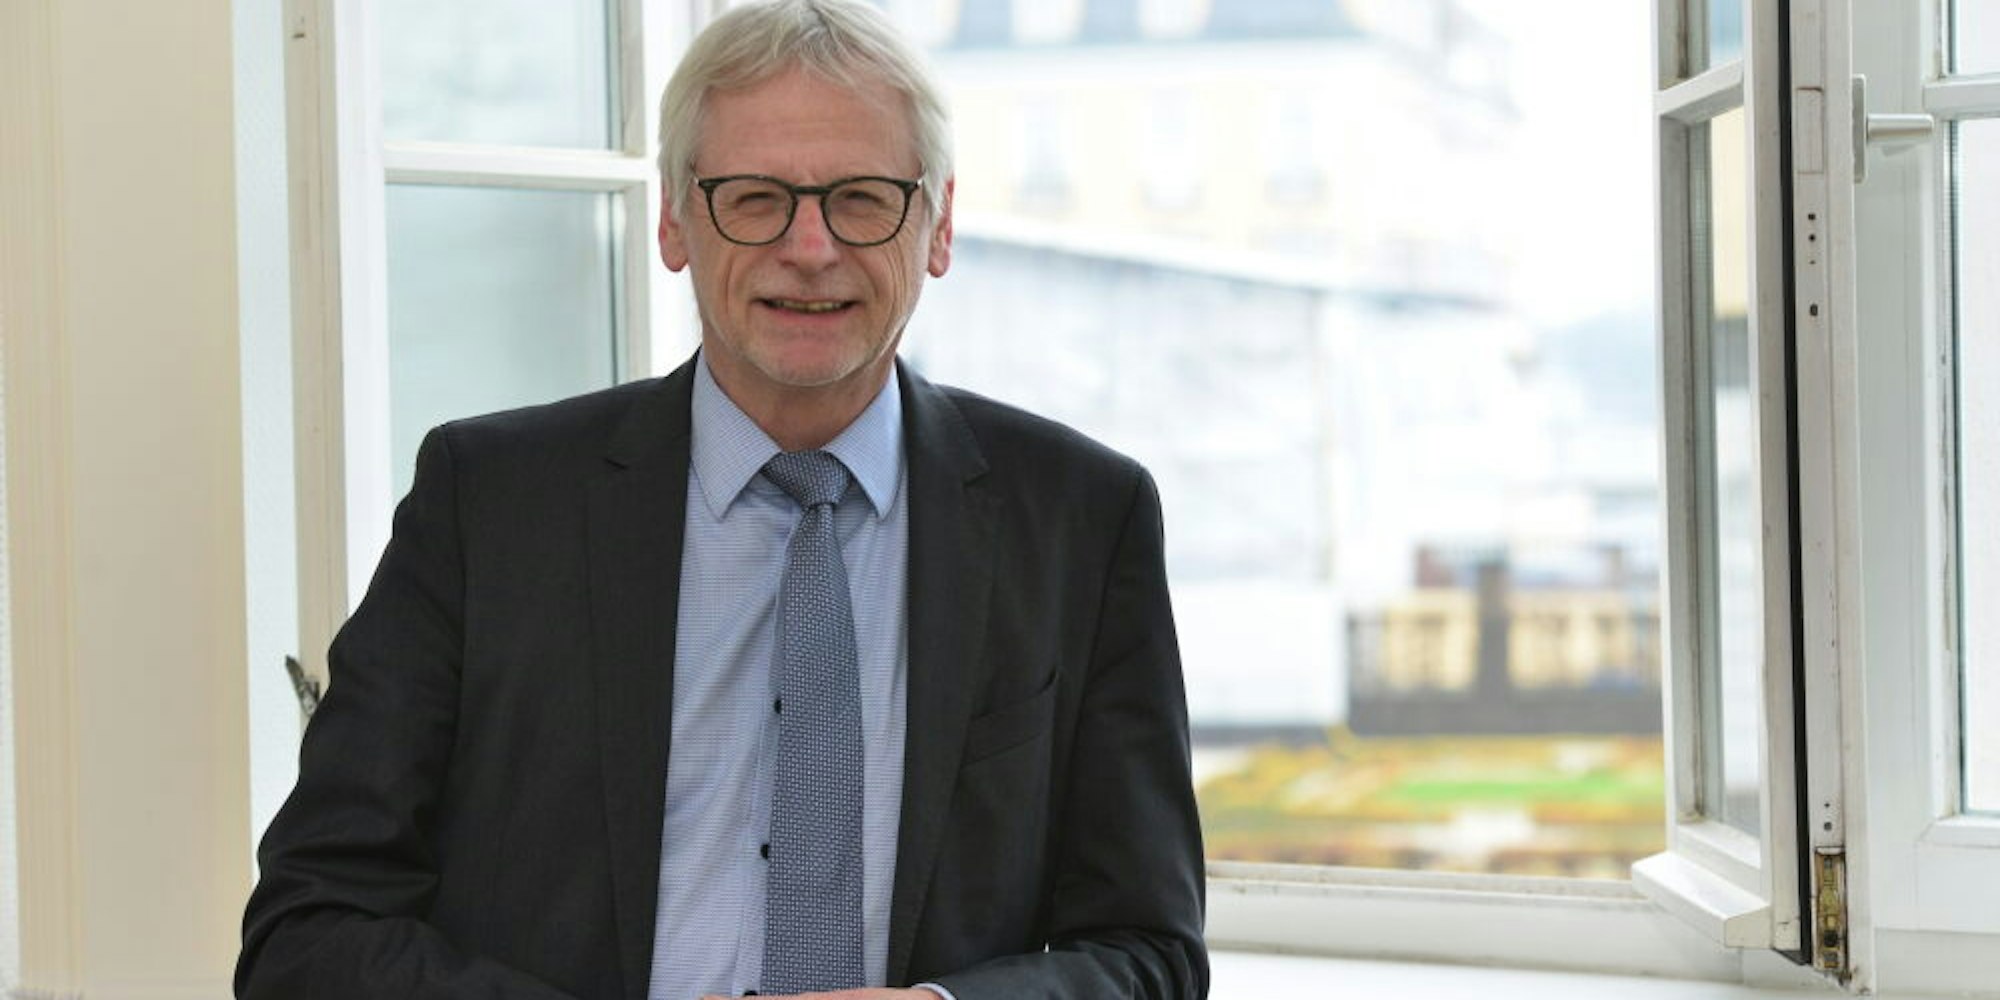 Dieter Freytag ist seit 2014 Bürgermeister in Brühl. Zuvor war bereits 23 Jahre Kämmerer seiner Heimatstadt.